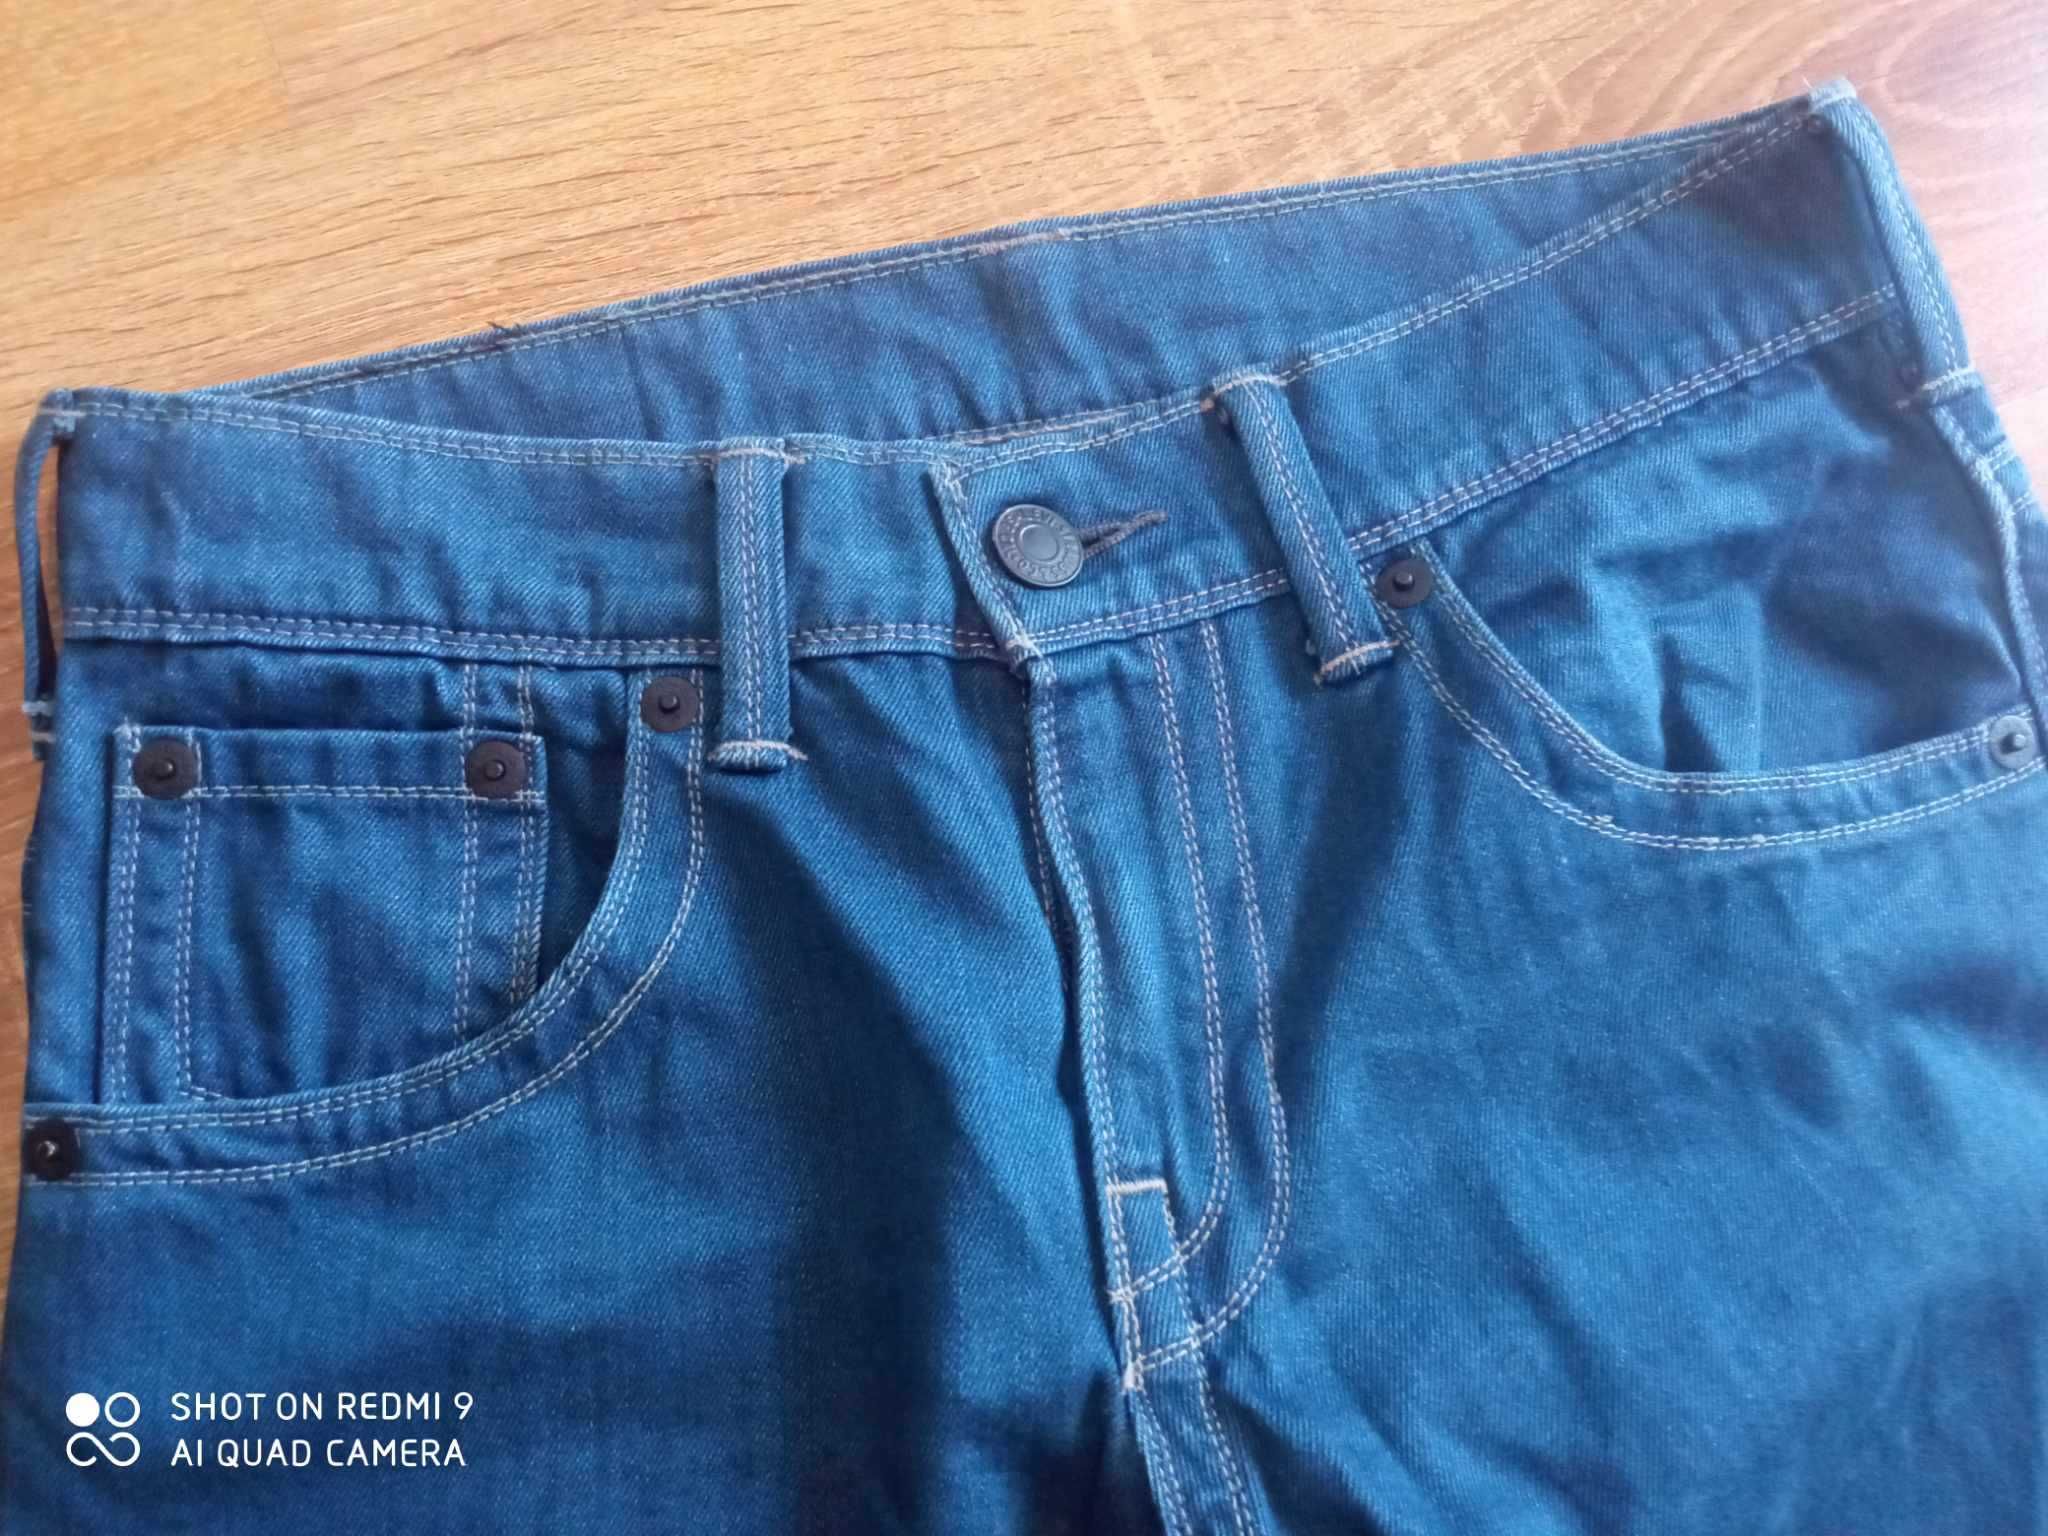 Spodnie męskie jeansy Levis Levi's 504 29/32 29x32 W29 L32 jak nowe